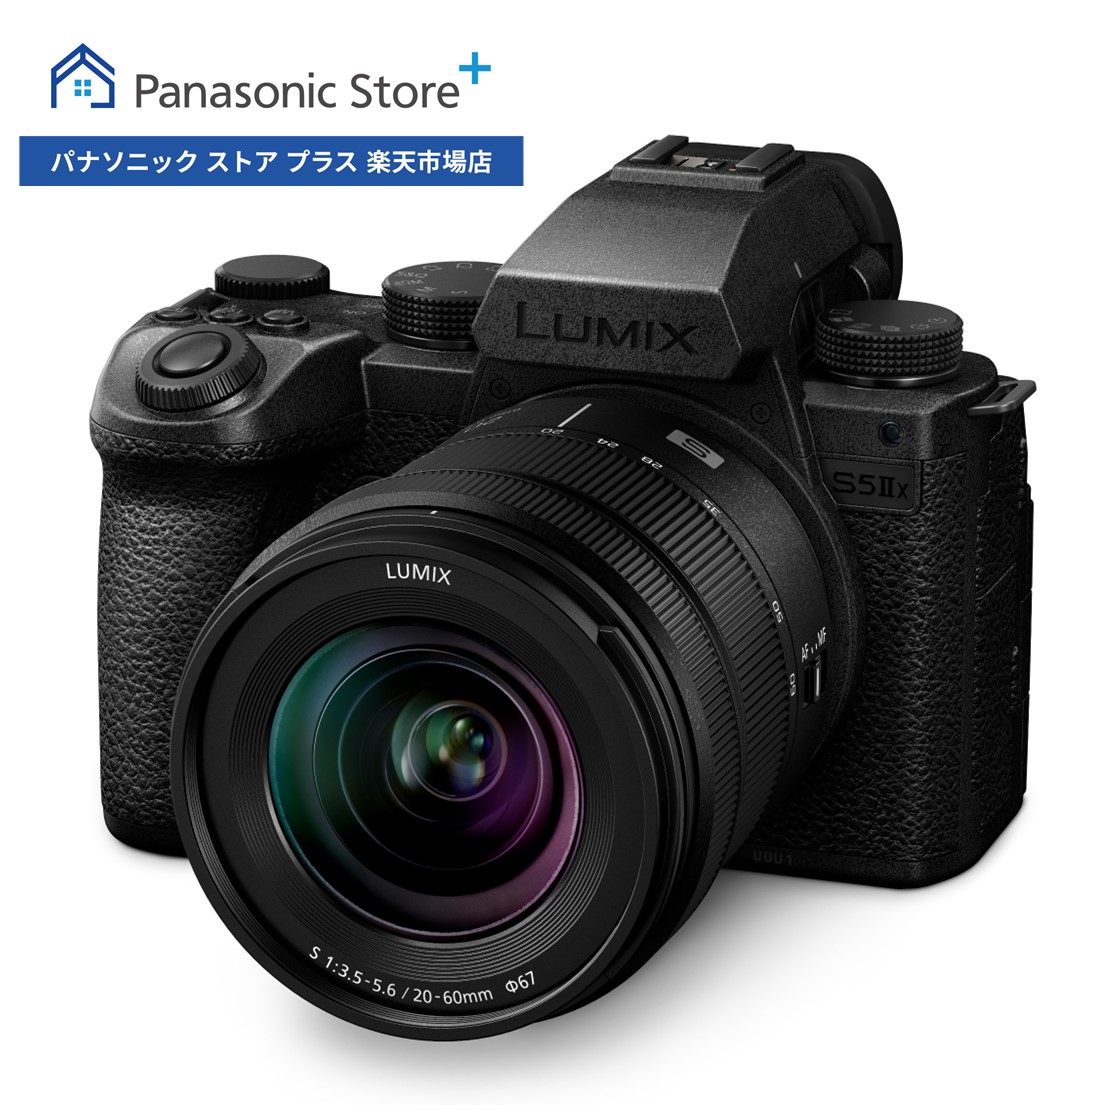 大割引Panasonic LUMIX Sシリーズ S5IIX フルサイズミラーレス一眼カメラ 標準ズームレンズキット DC-S5M2XK ハイグレード動画性能 ライブ配信 高精度 高画素 手ブレ補正 超高速連写 Vlog撮影リアルタイム認識AF